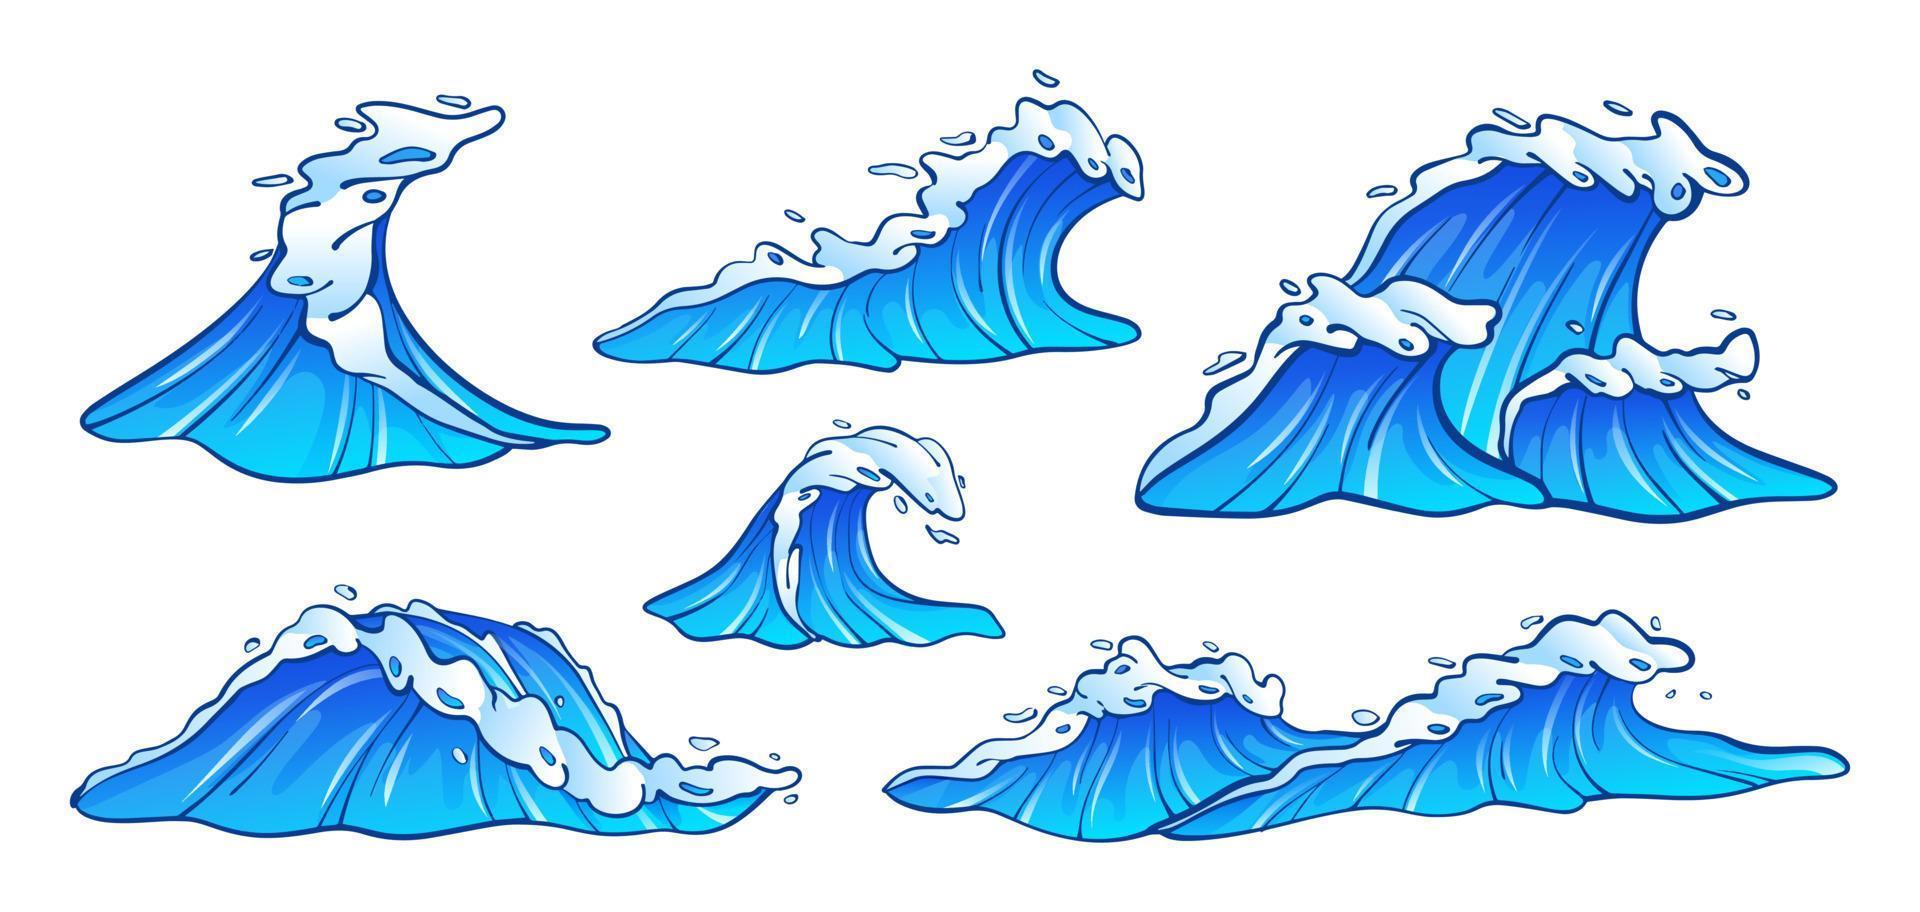 Sammlung von Meereswellen-Vektorillustrationen. satz blaue meereswellen mit weißem schaum im karikaturstil vektor